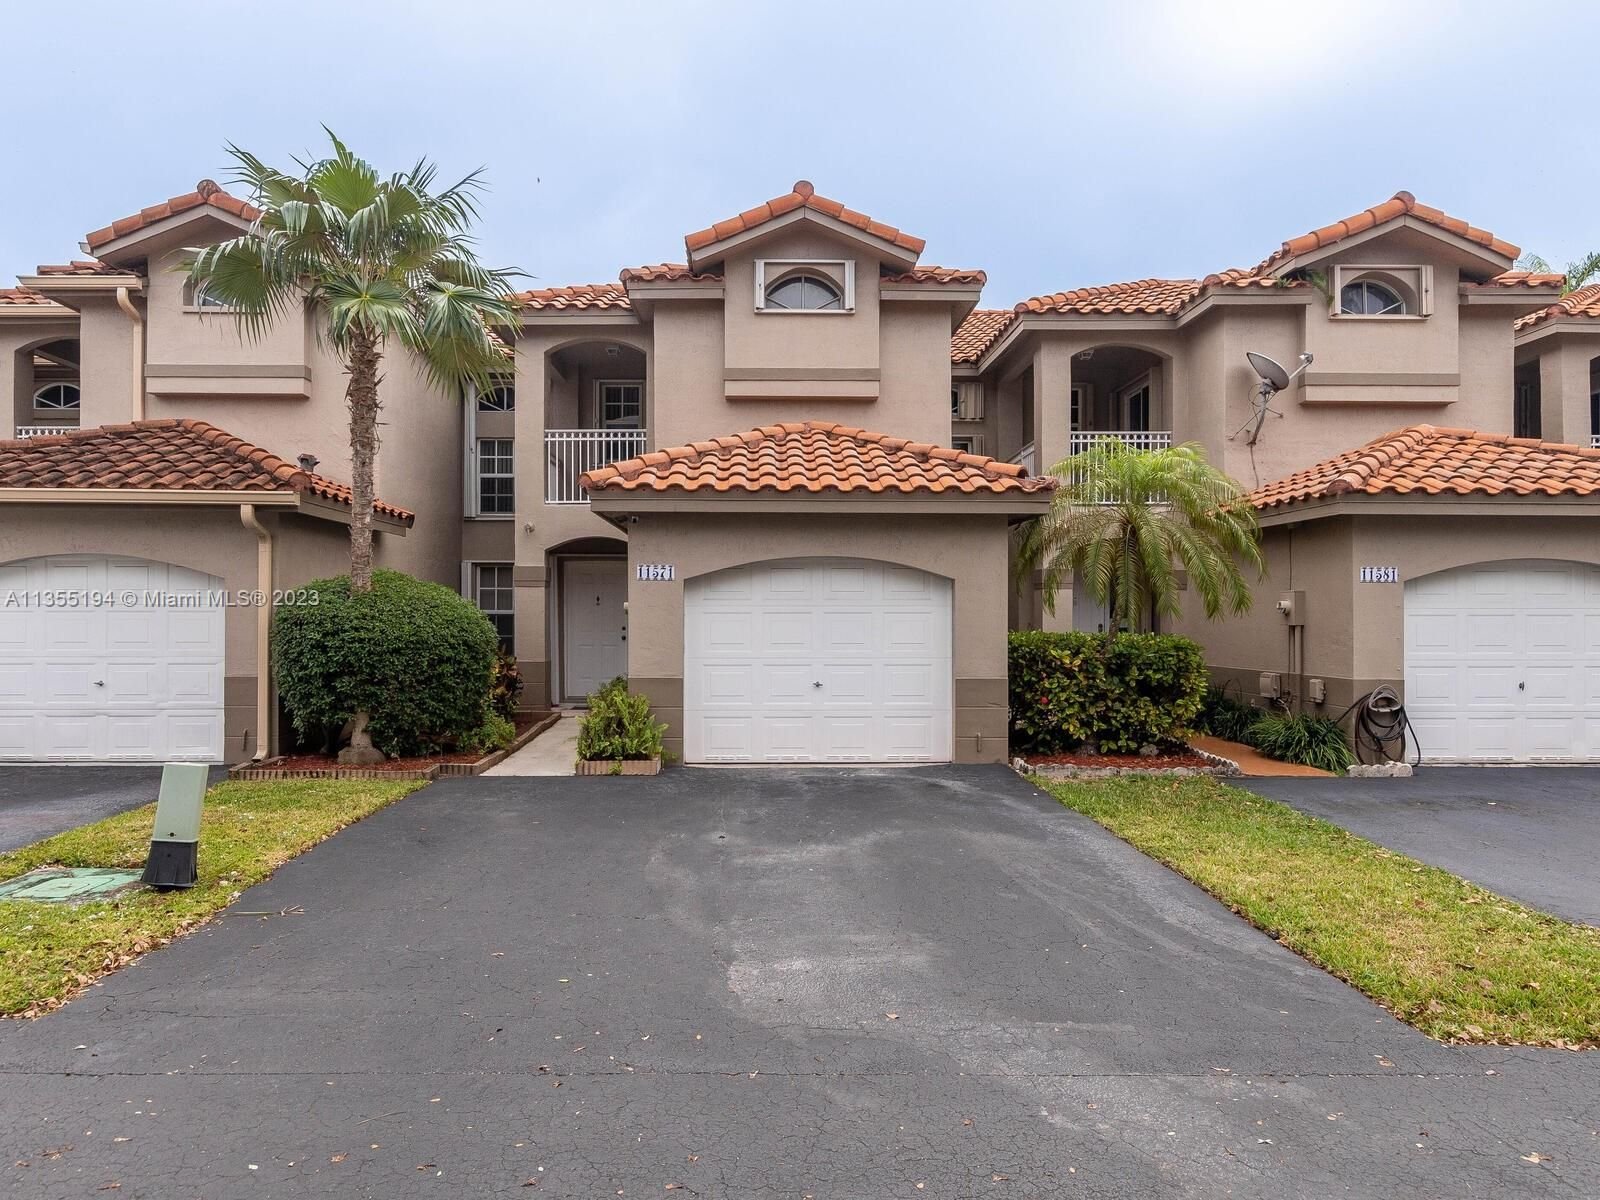 Real estate property located at 11571 148th Path #11571, Miami-Dade County, Miami, FL